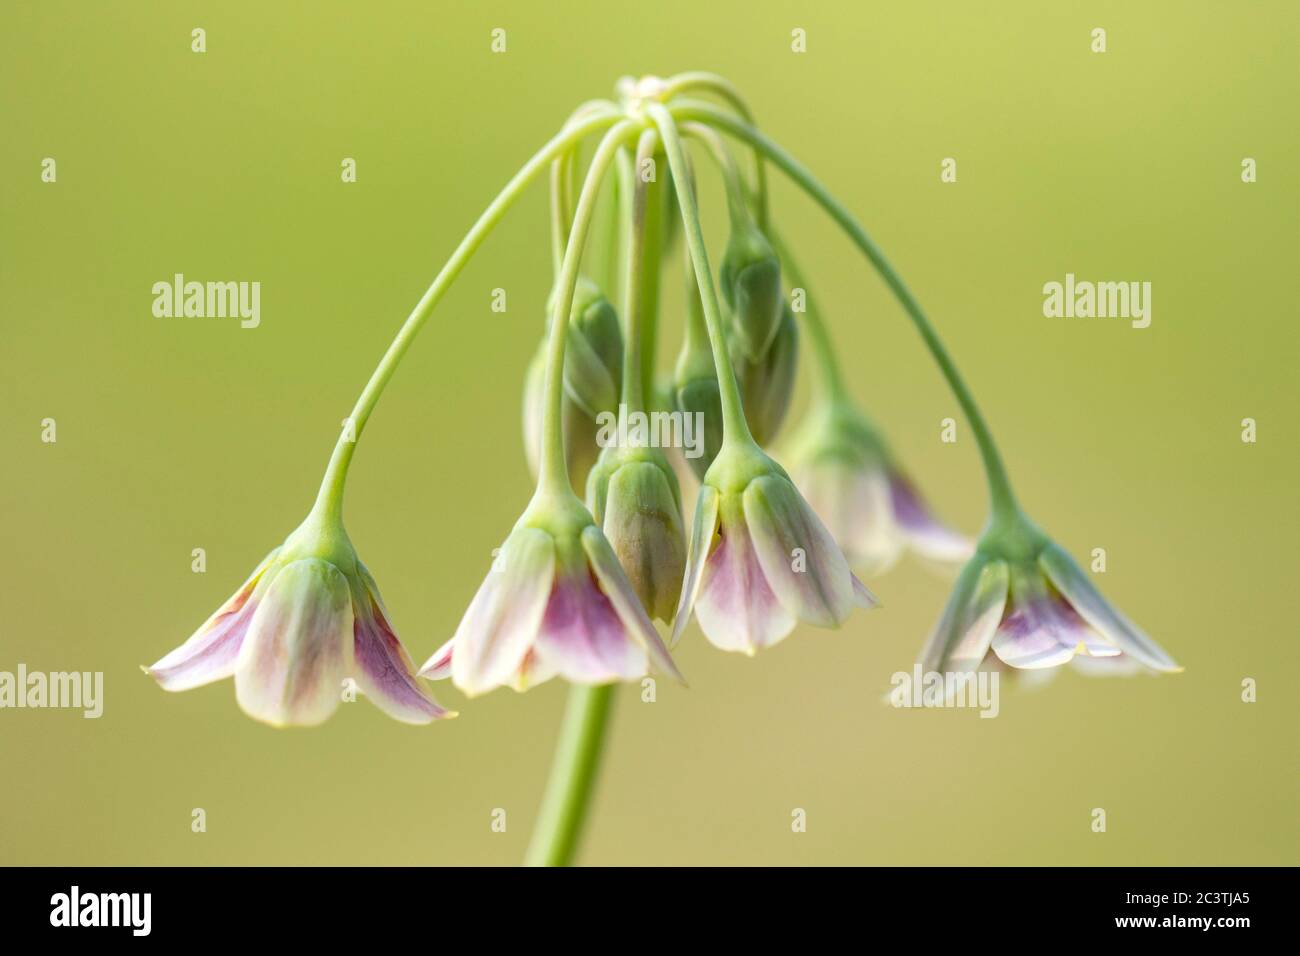 Honey garlic (Allium siculum, Nectaroscordum siculum), inflorescence Stock Photo